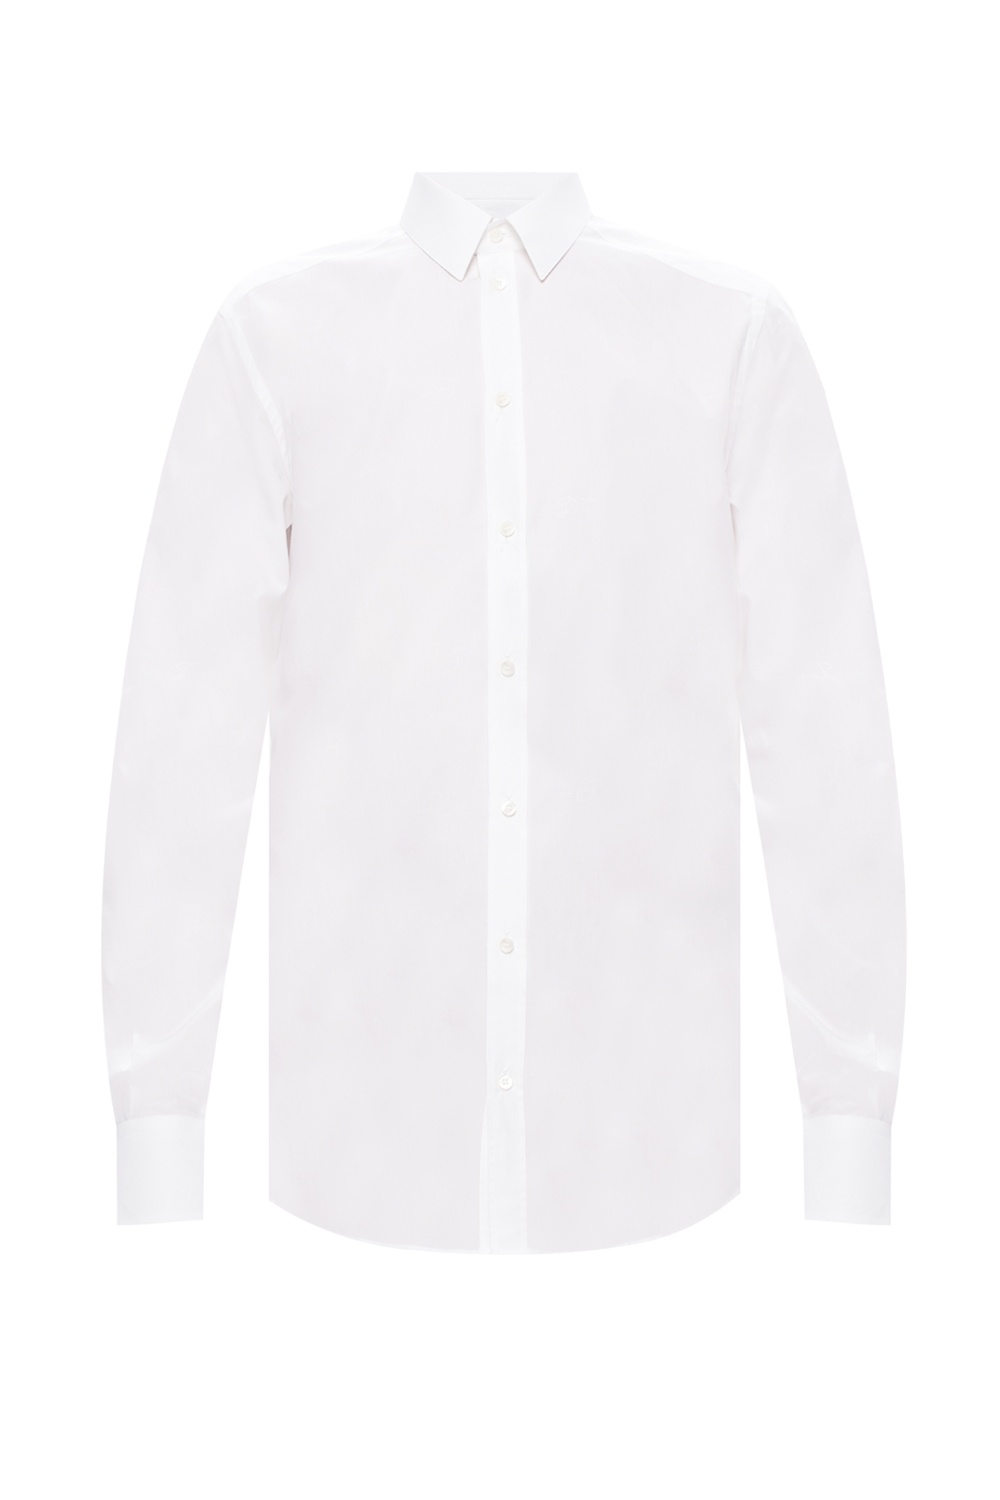 Dolce & Gabbana Cotton shirt